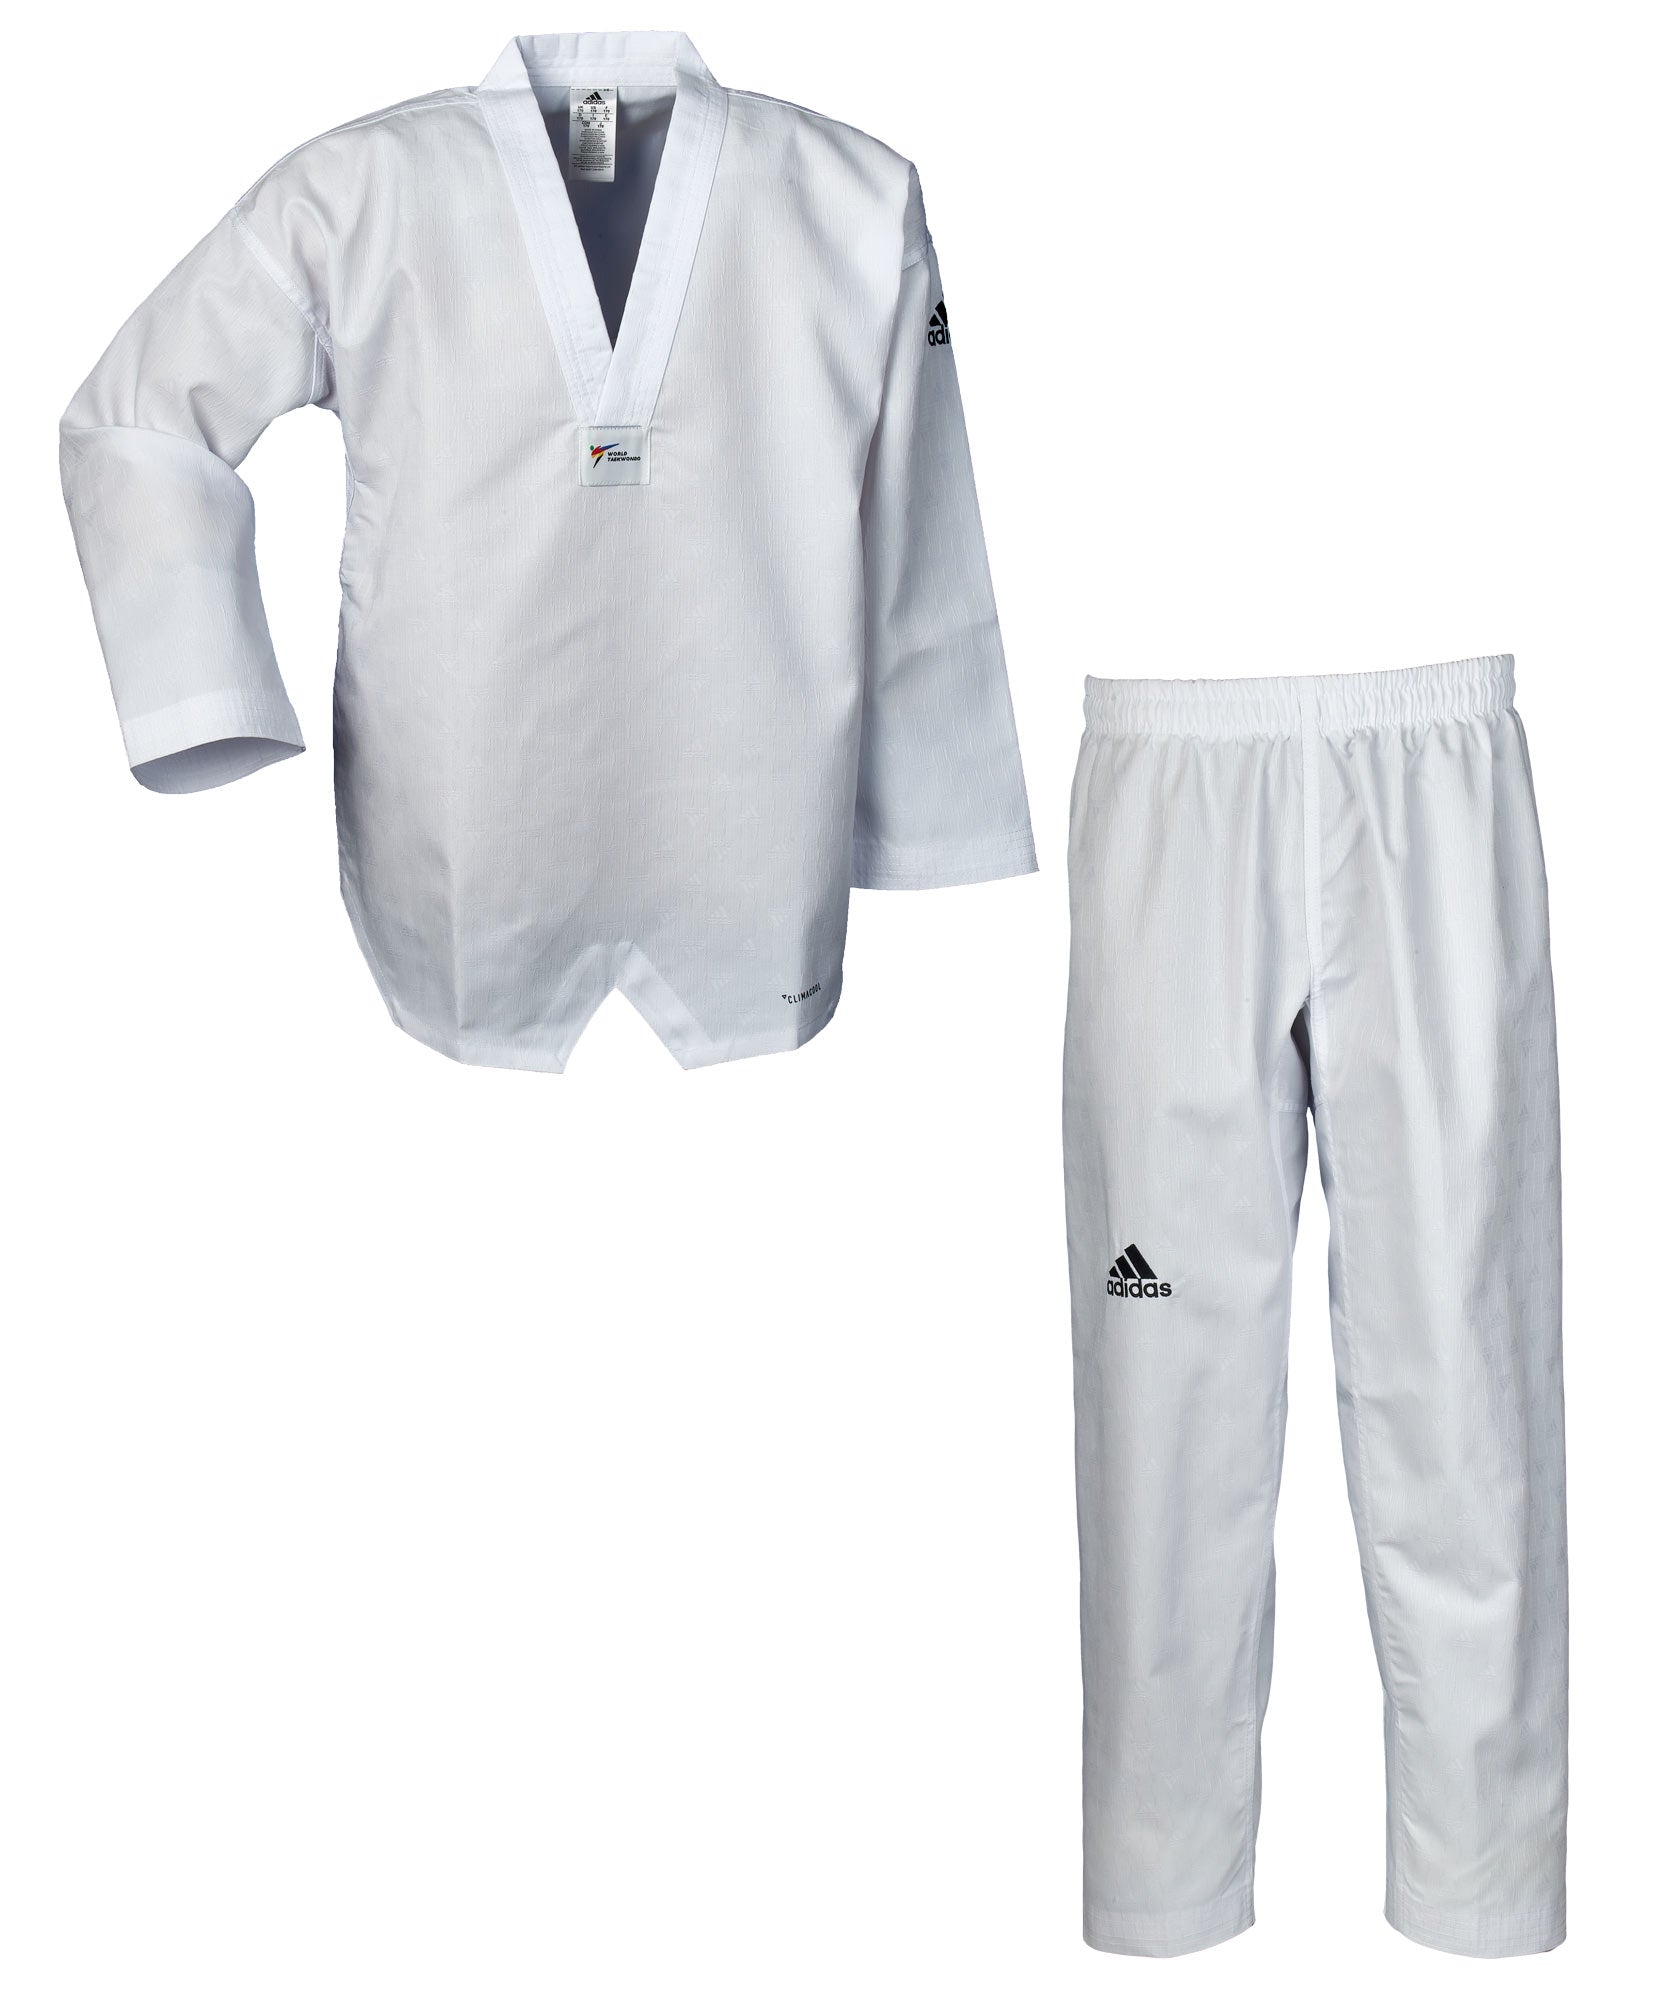 adidas taekwondo uniform